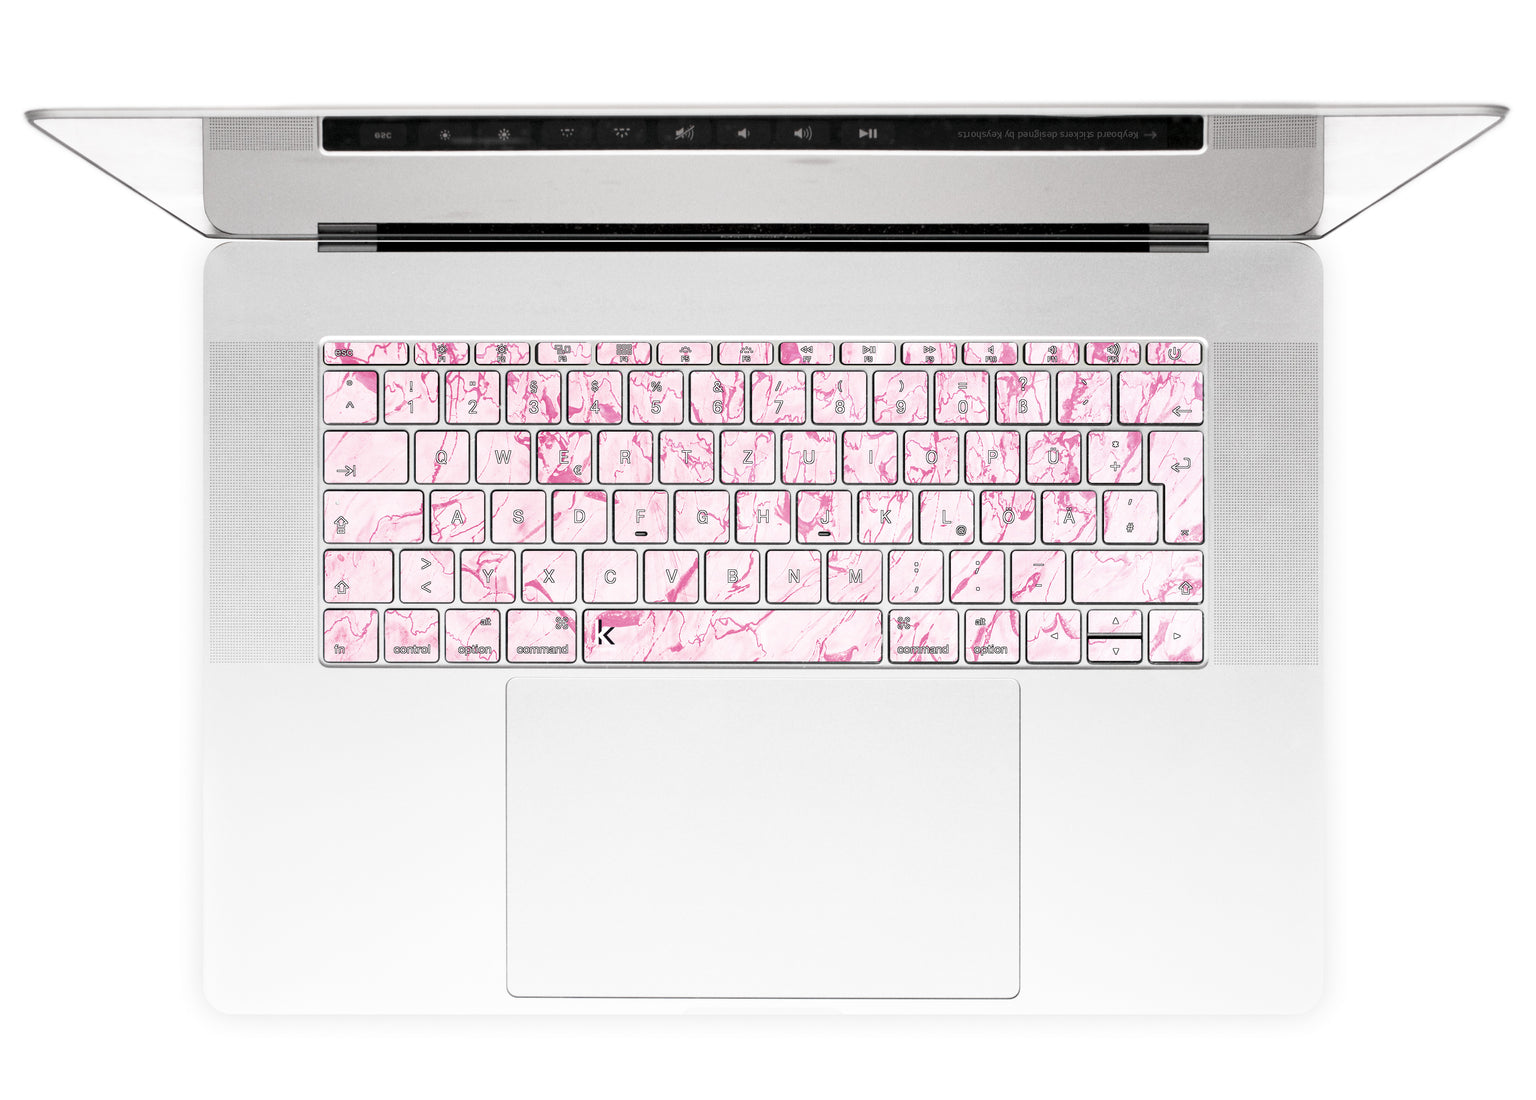 Complicated Pink MacBook Keyboard Stickers alternate German keyboard